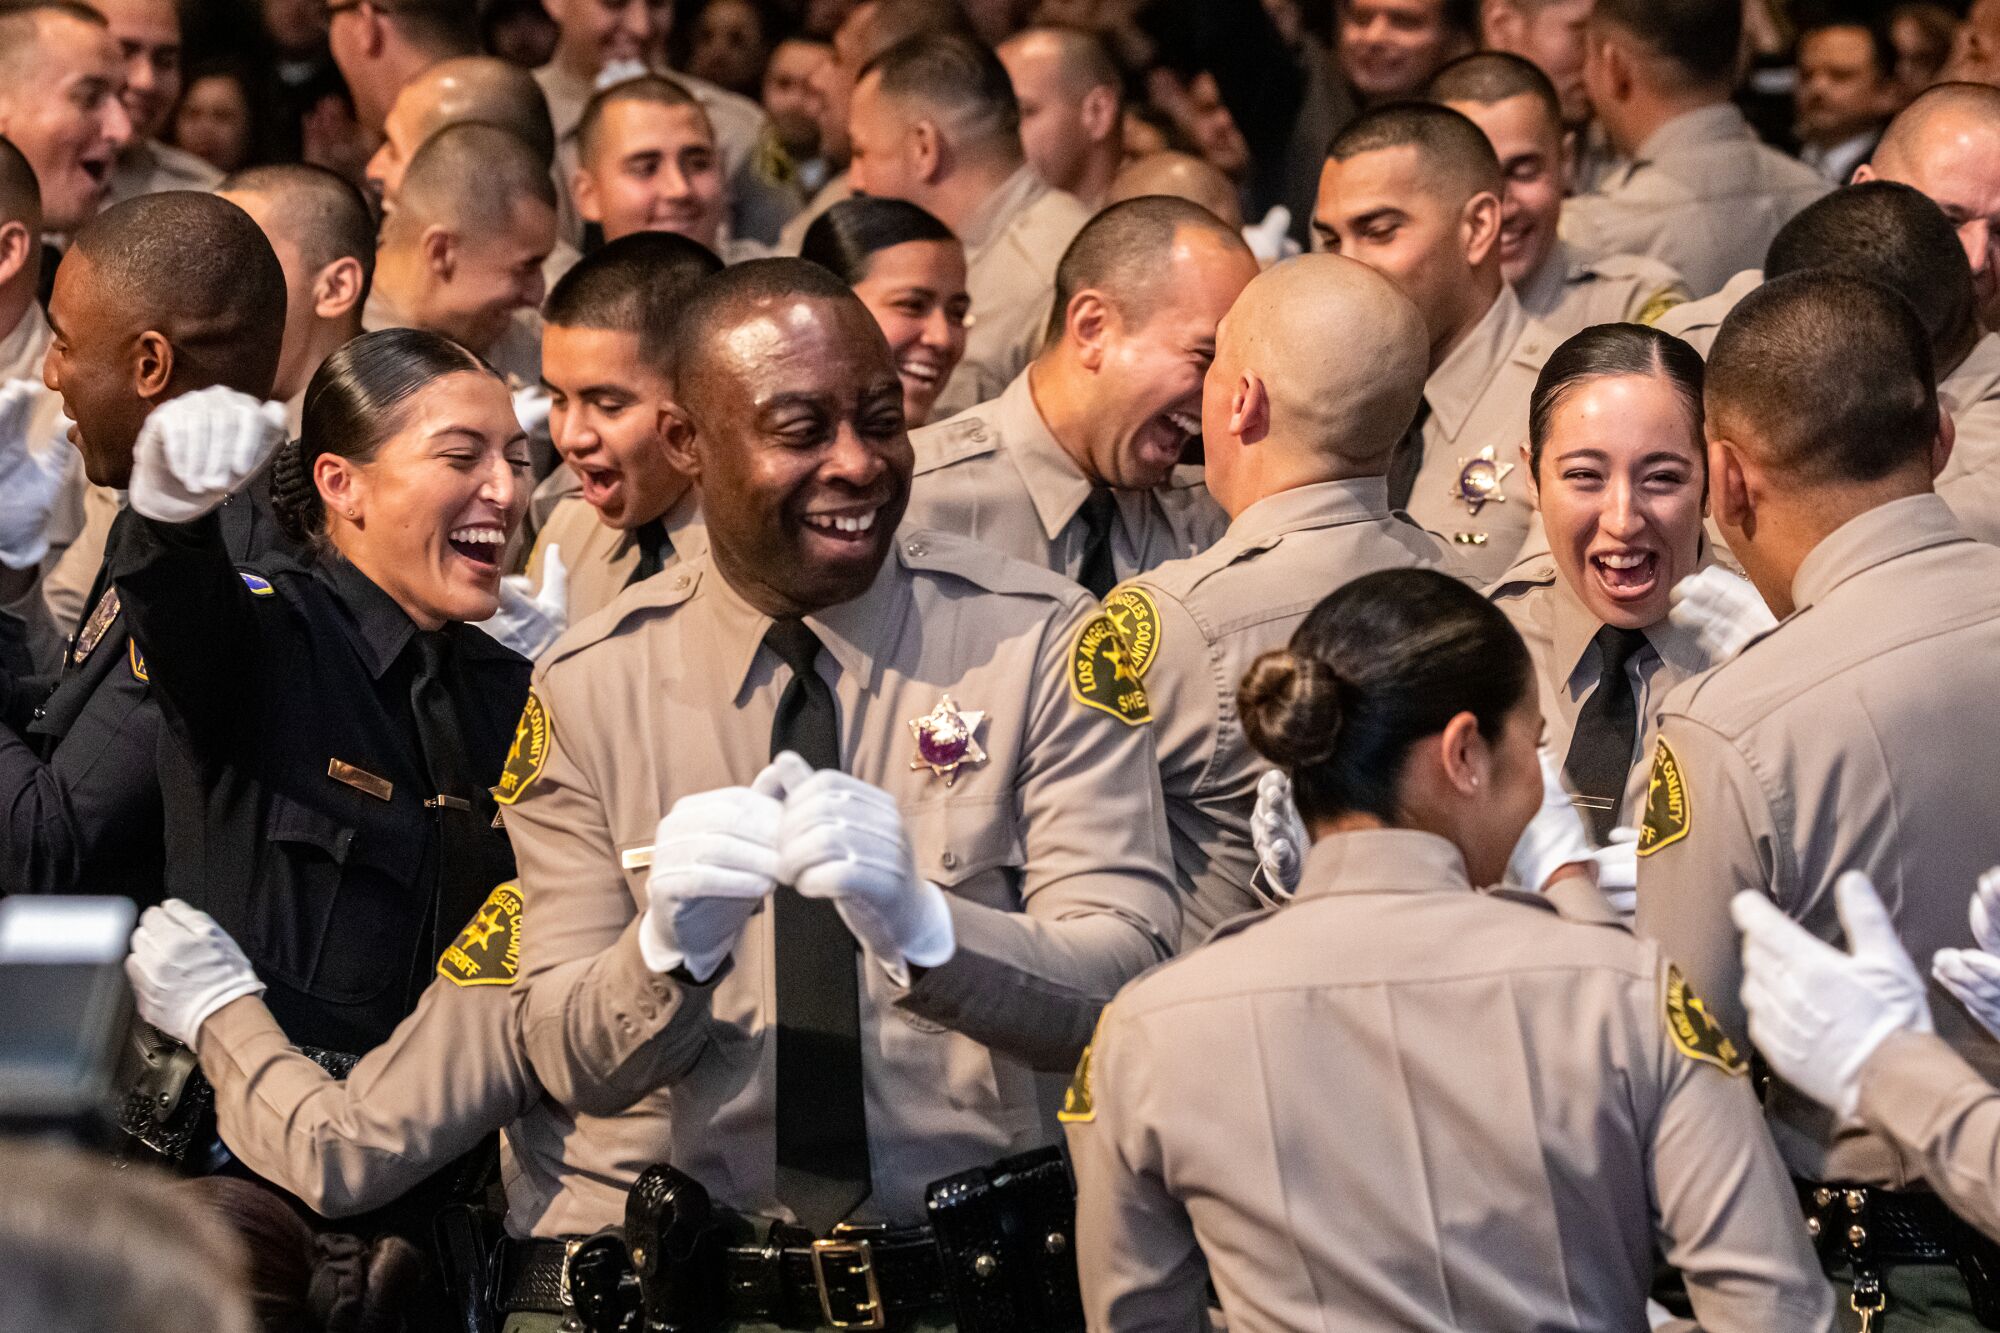 Los Angeles County Sheriff Academy Class 464 célébrer l'obtention de son diplôme lors d'une cérémonie tenue à l'Est 